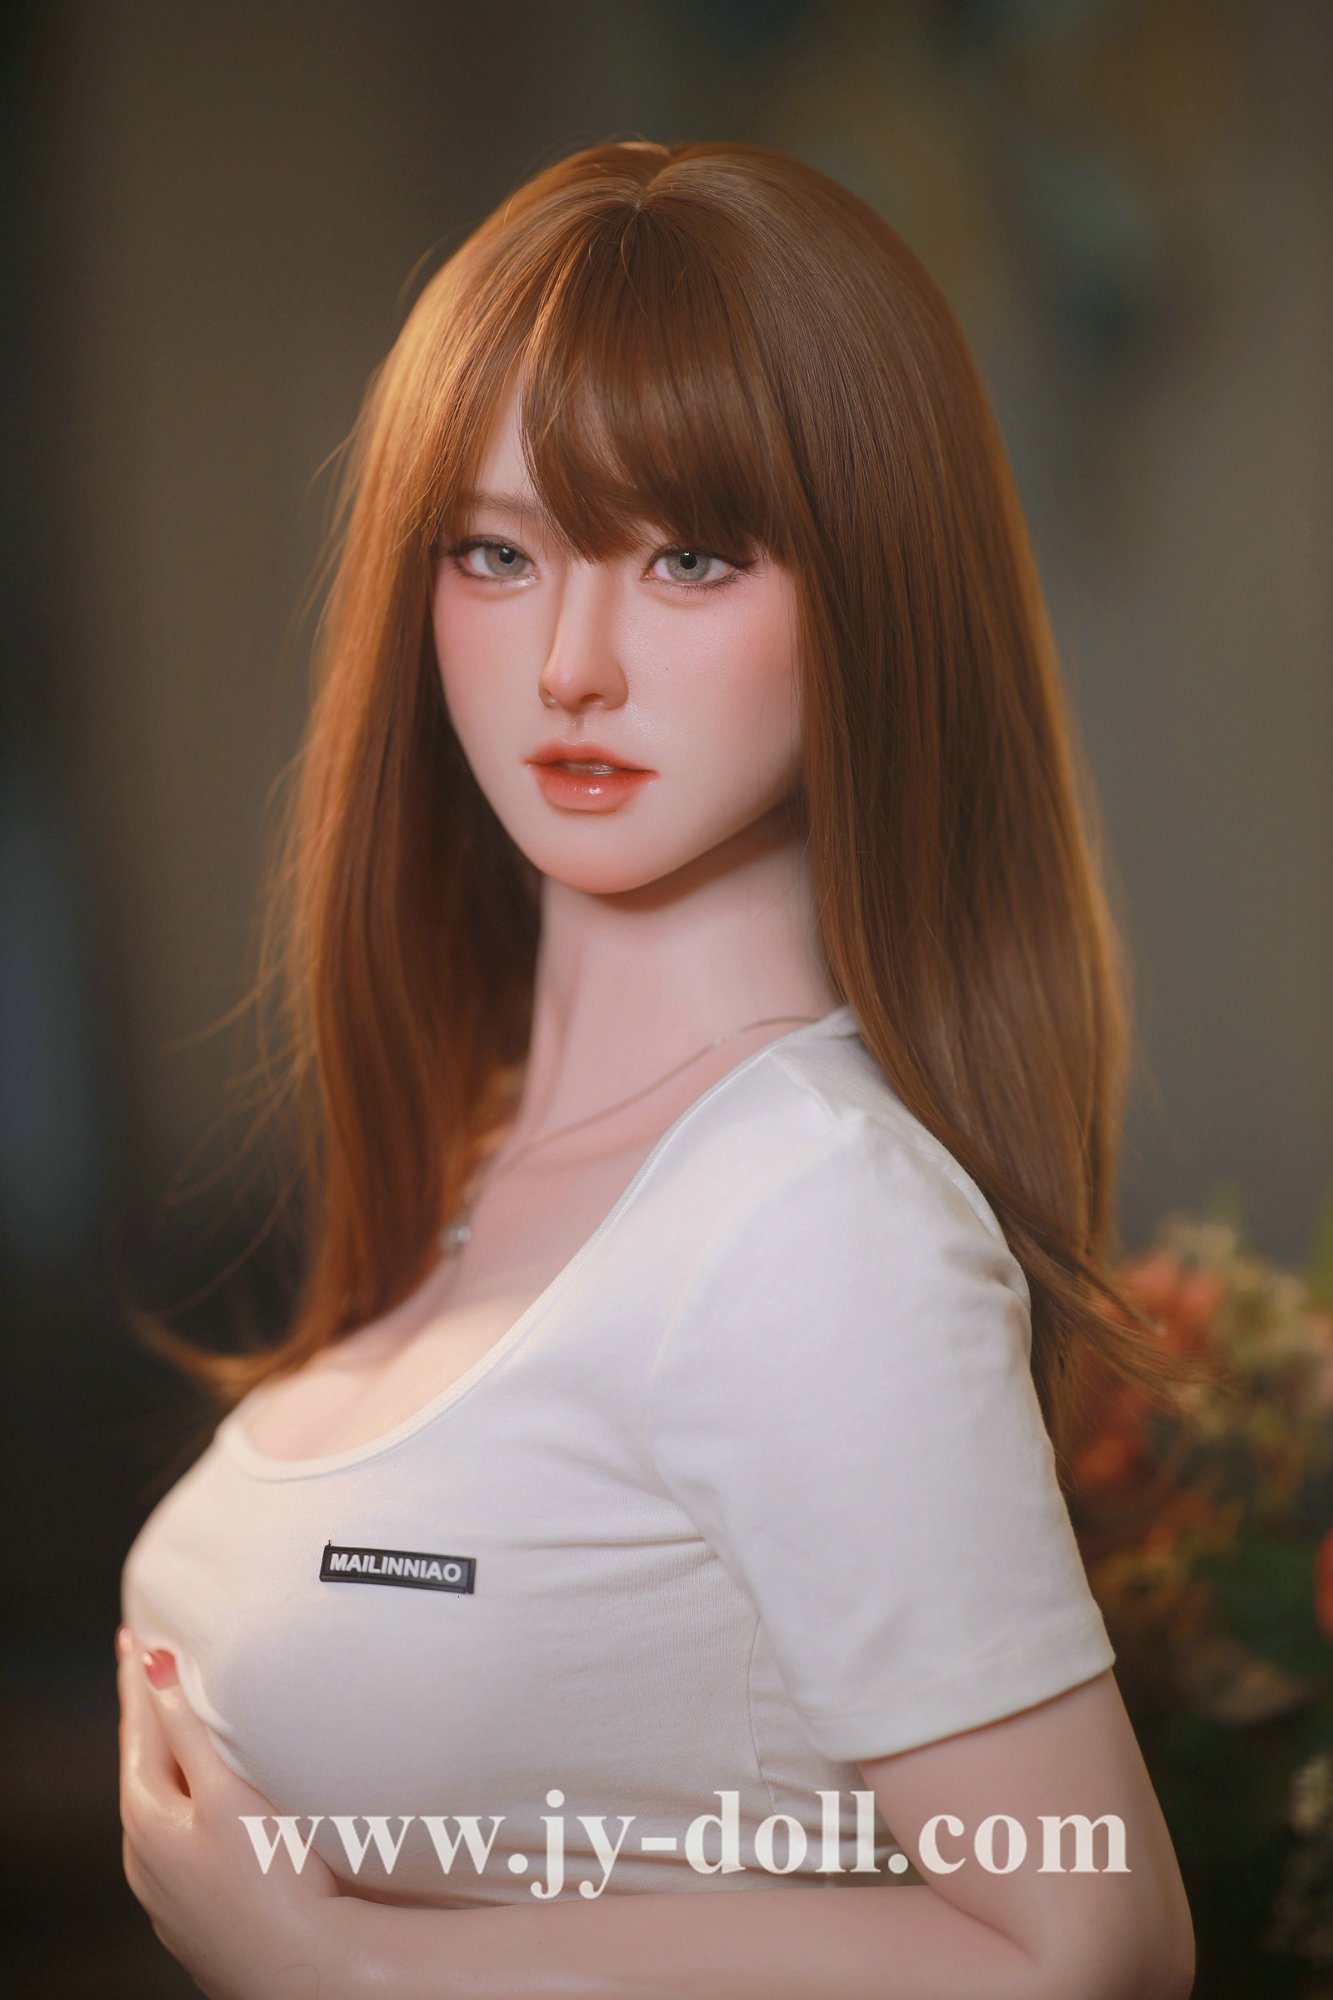 JY Doll 168cm full silicone big boobs love doll Chu Xia